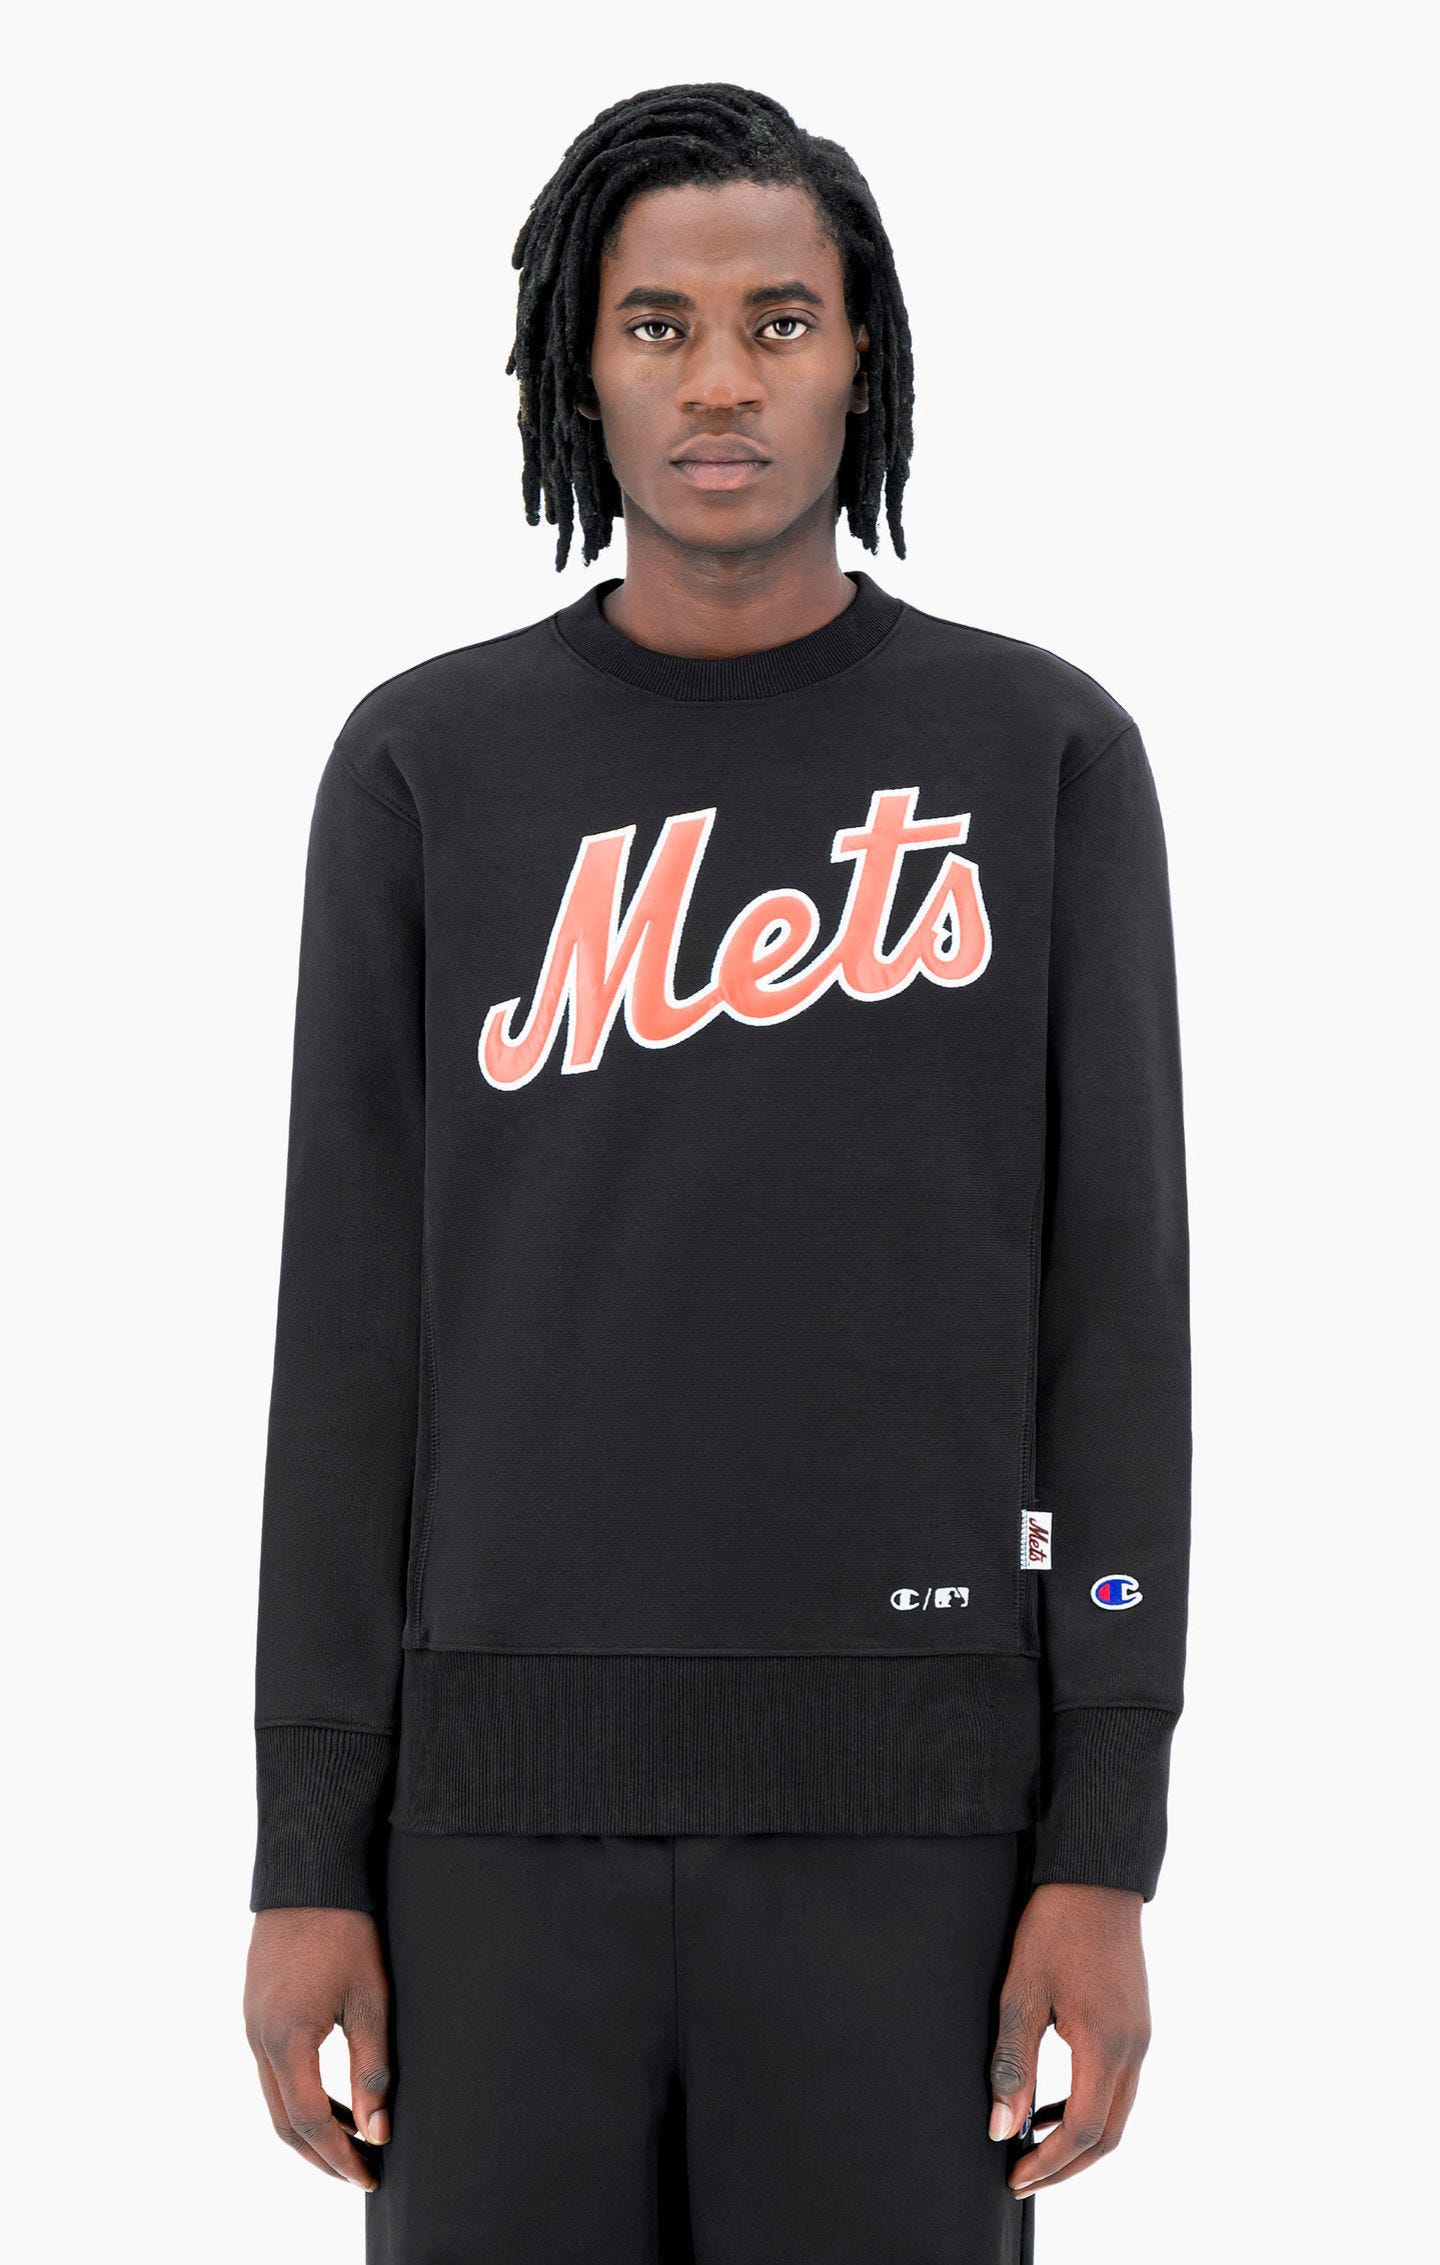 New York MLB Reverse Weave Sweatshirt